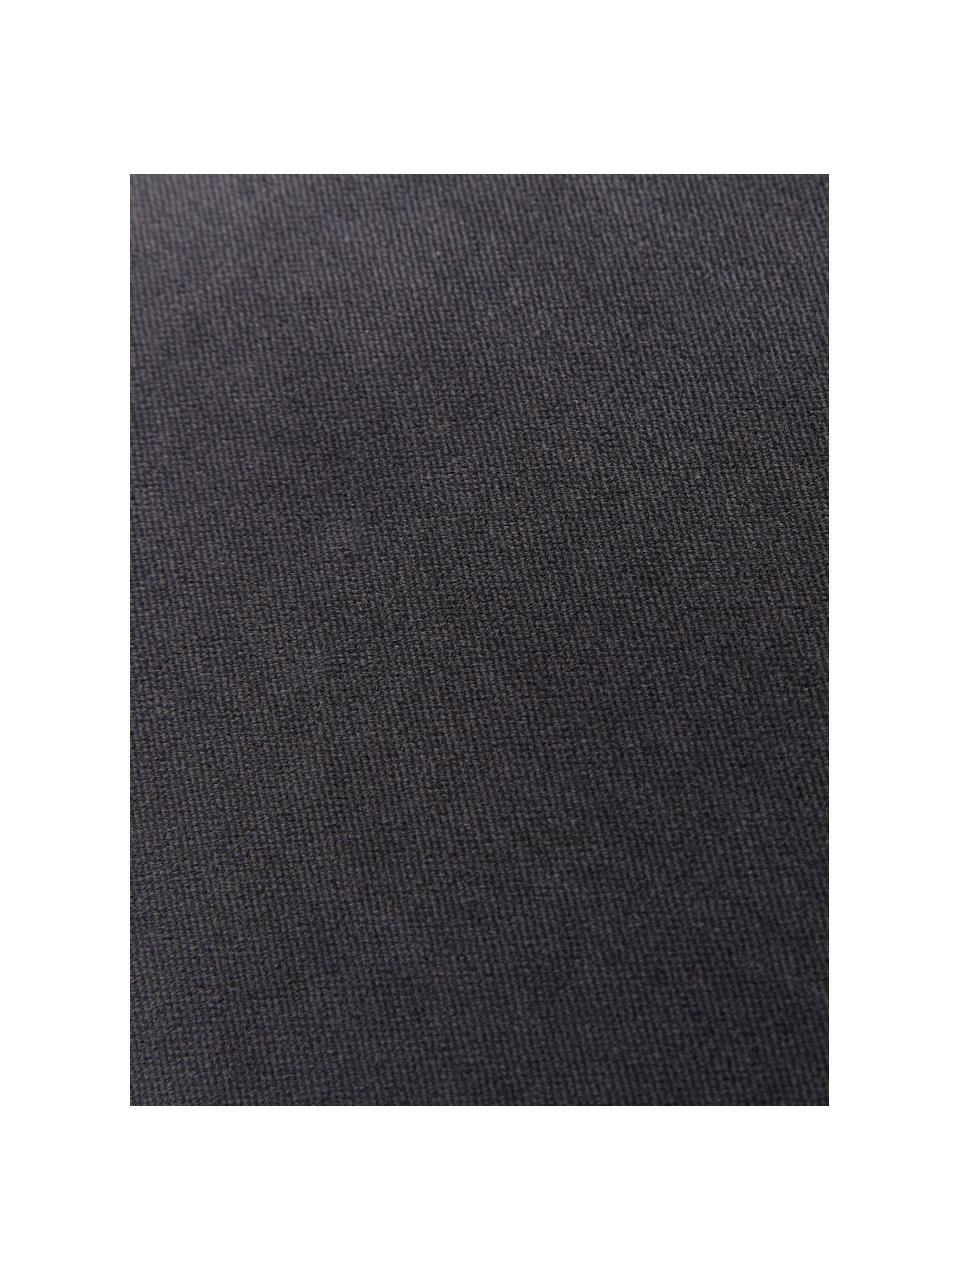 Einfarbige Samt-Kissenhülle Dana in Anthrazit, 100% Baumwollsamt, Anthrazit, B 30 x L 50 cm